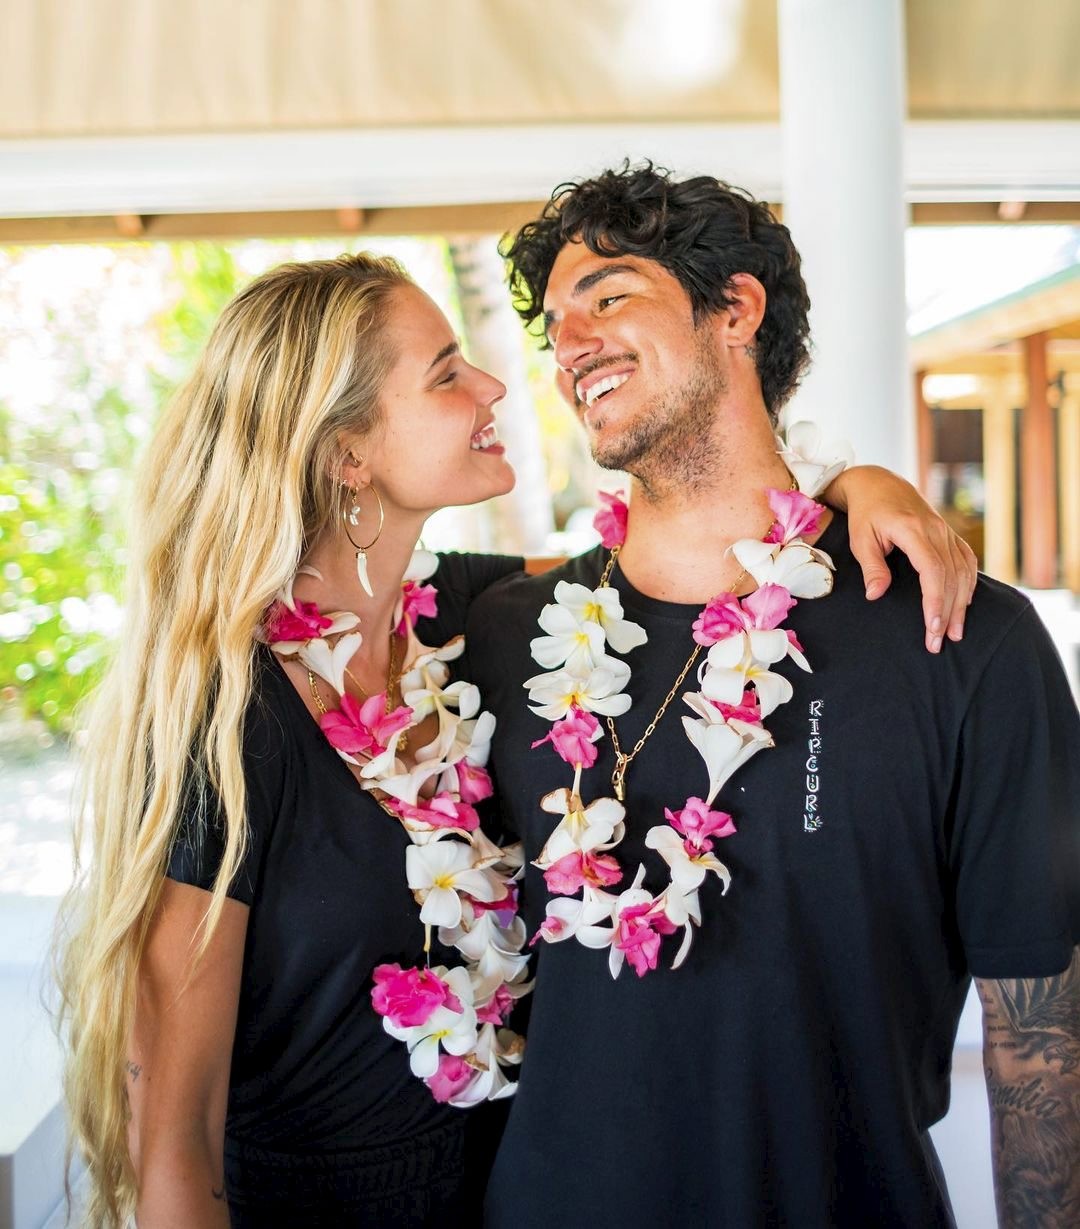 Yasmin Brunet engatou um romance com o surfista Gabriel Medina em 2020. Os dois decidiram morar juntos durante a pandemia e se casaram no fim daquele ano, numa cerimônia que reuniu poucos convidados, no Havaí, nos EUA. A união chegou ao fim em janeiro de 2022 — Foto: Reprodução